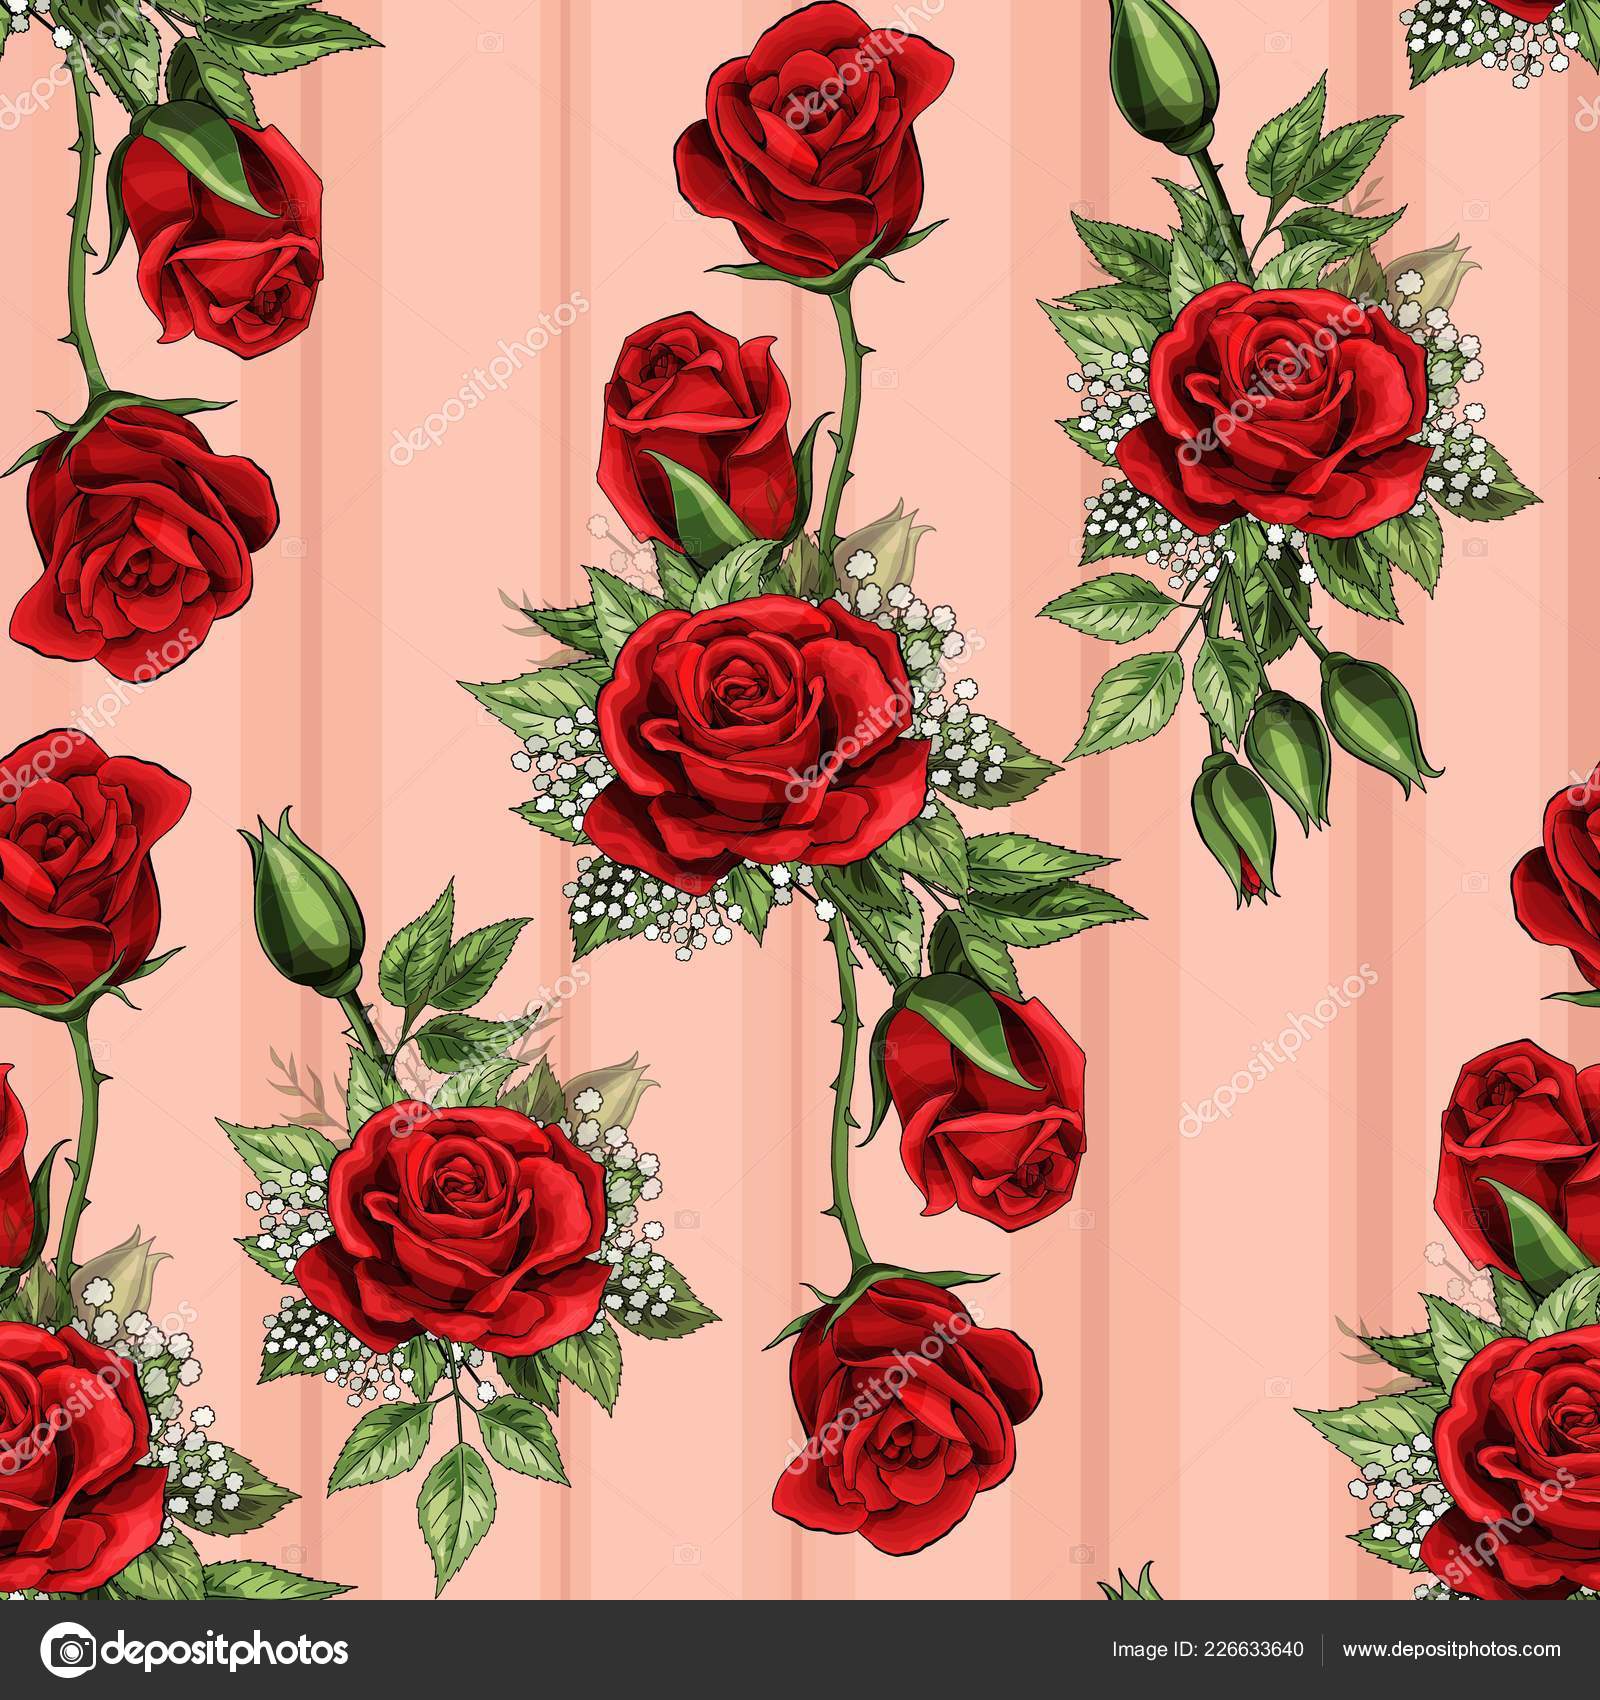 빨간 장미 벽지,정원 장미,빨간,꽃,장미,플로리 분다